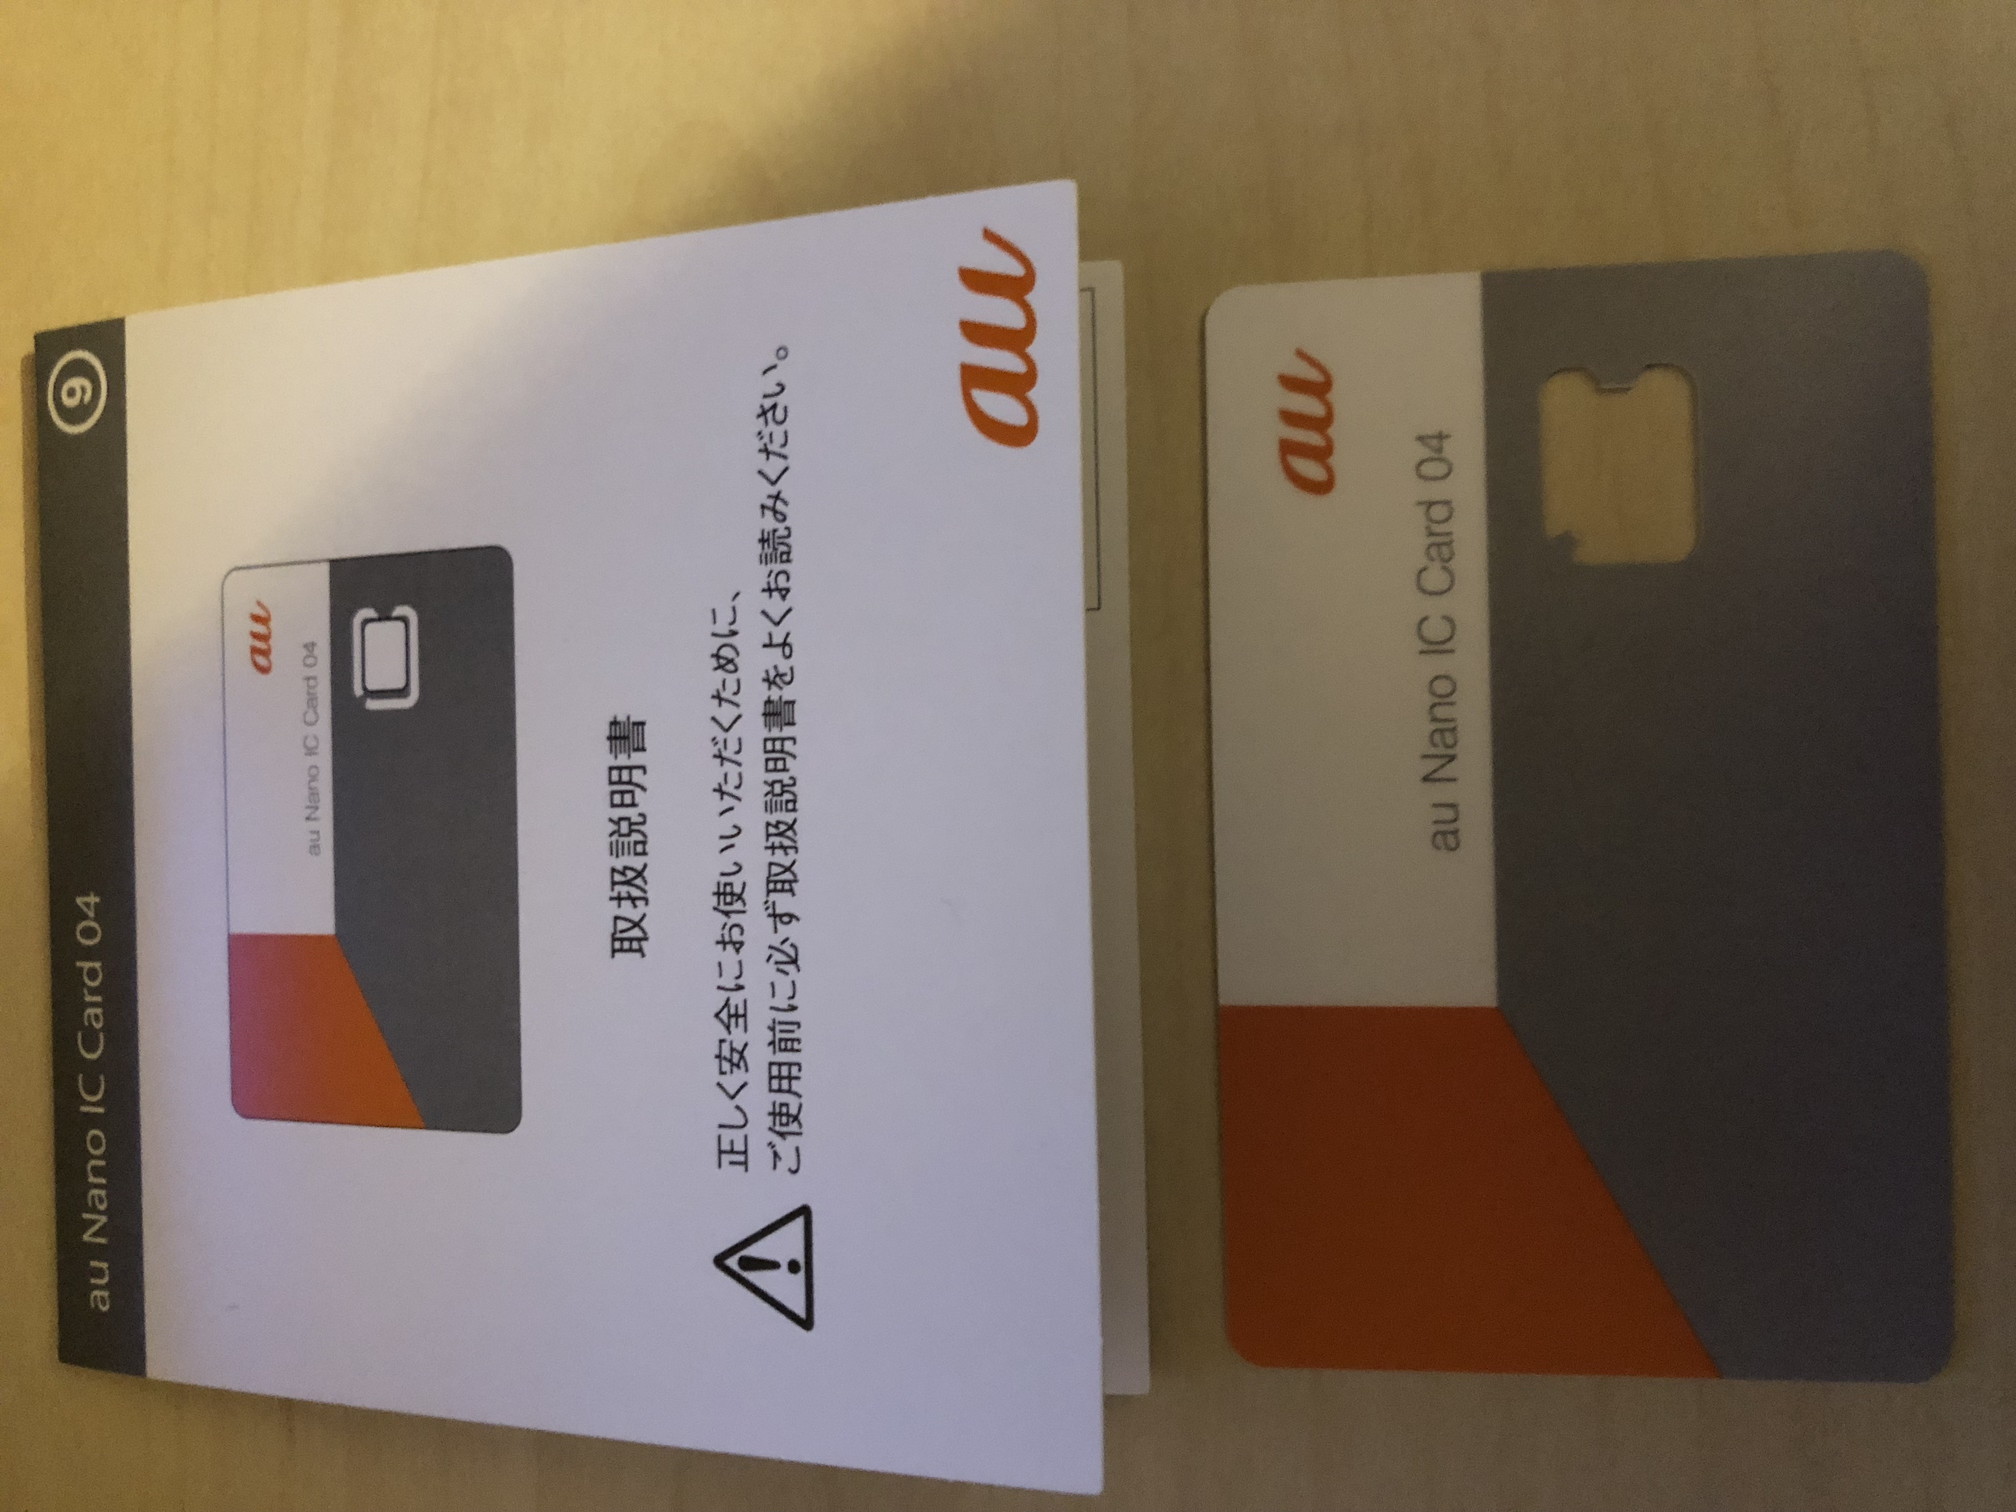 Auのsimカード Au Nano Ic Card 04 はiphone Xに合わない 田舎人i Simtripのモバイル旅行